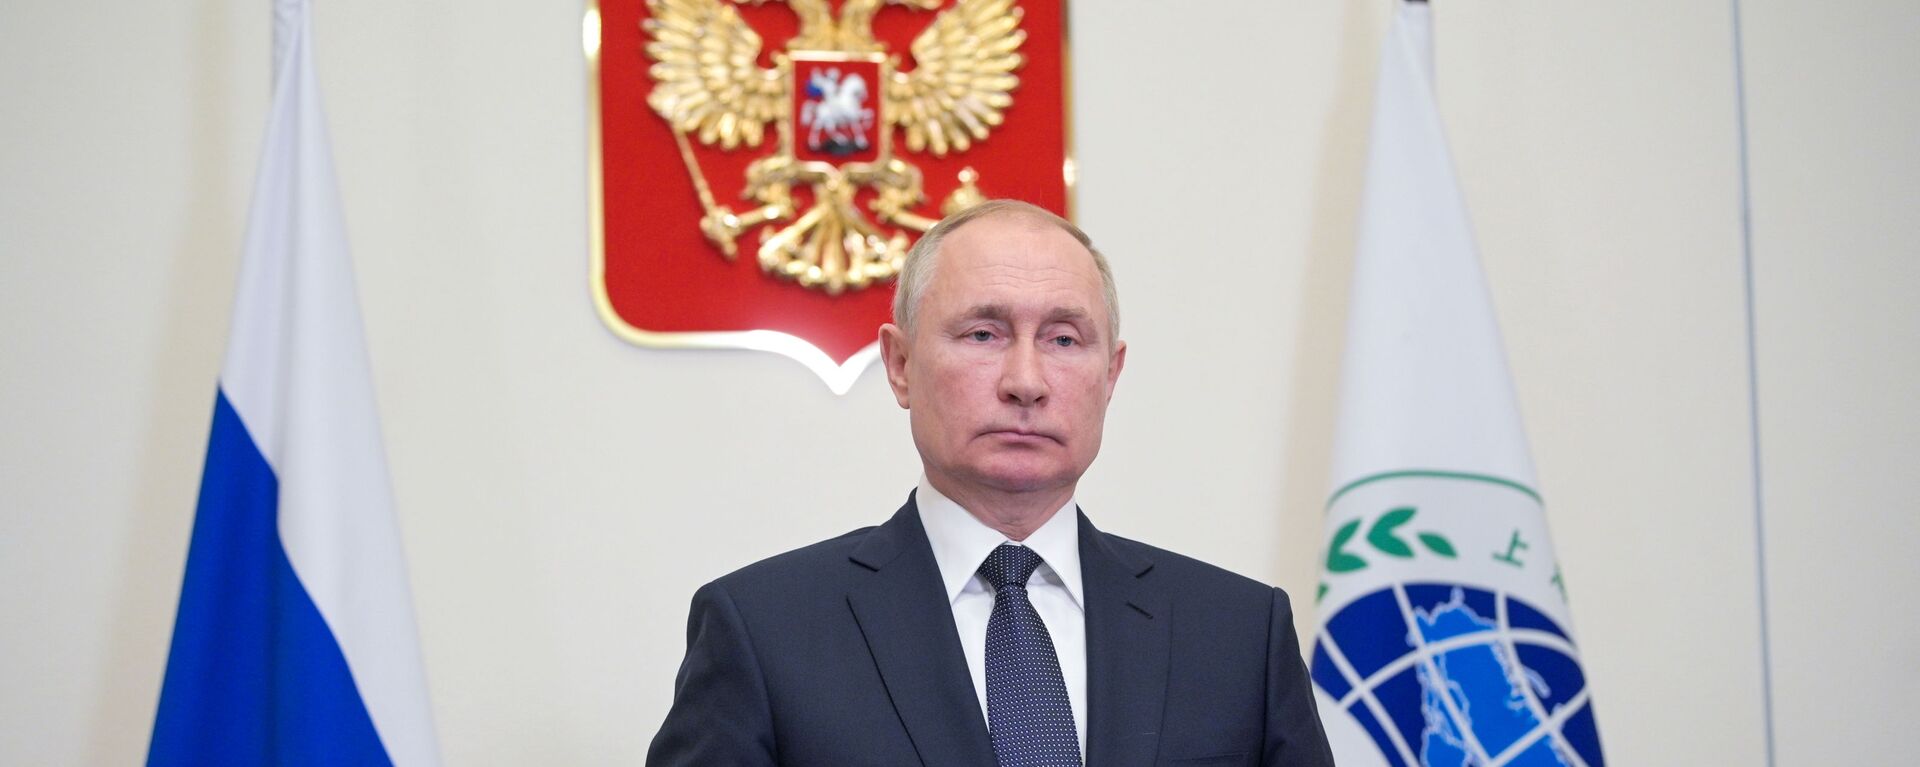 الرئيس الروسي فلاديمير بوتين خلال اجتماع قمة دول منظمة شنغهاي للتعاون، روسيا 17 سبتمبر 2021  - سبوتنيك عربي, 1920, 15.12.2021